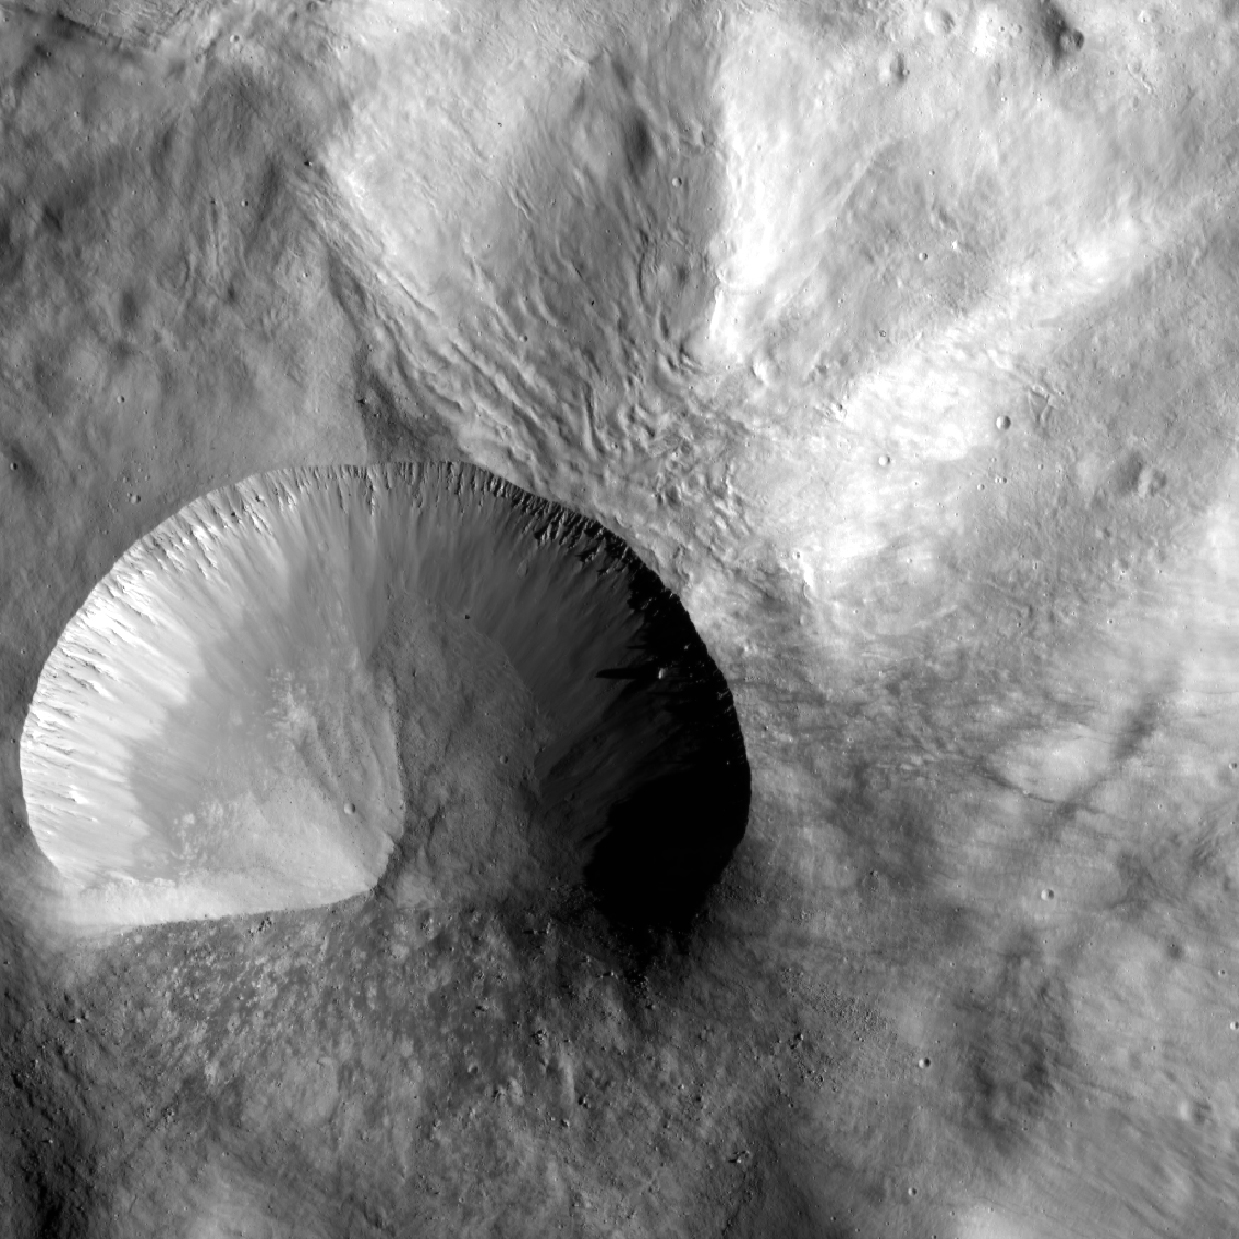 КА "Рассвет" показывает молодой кратер на Весте крупным планом